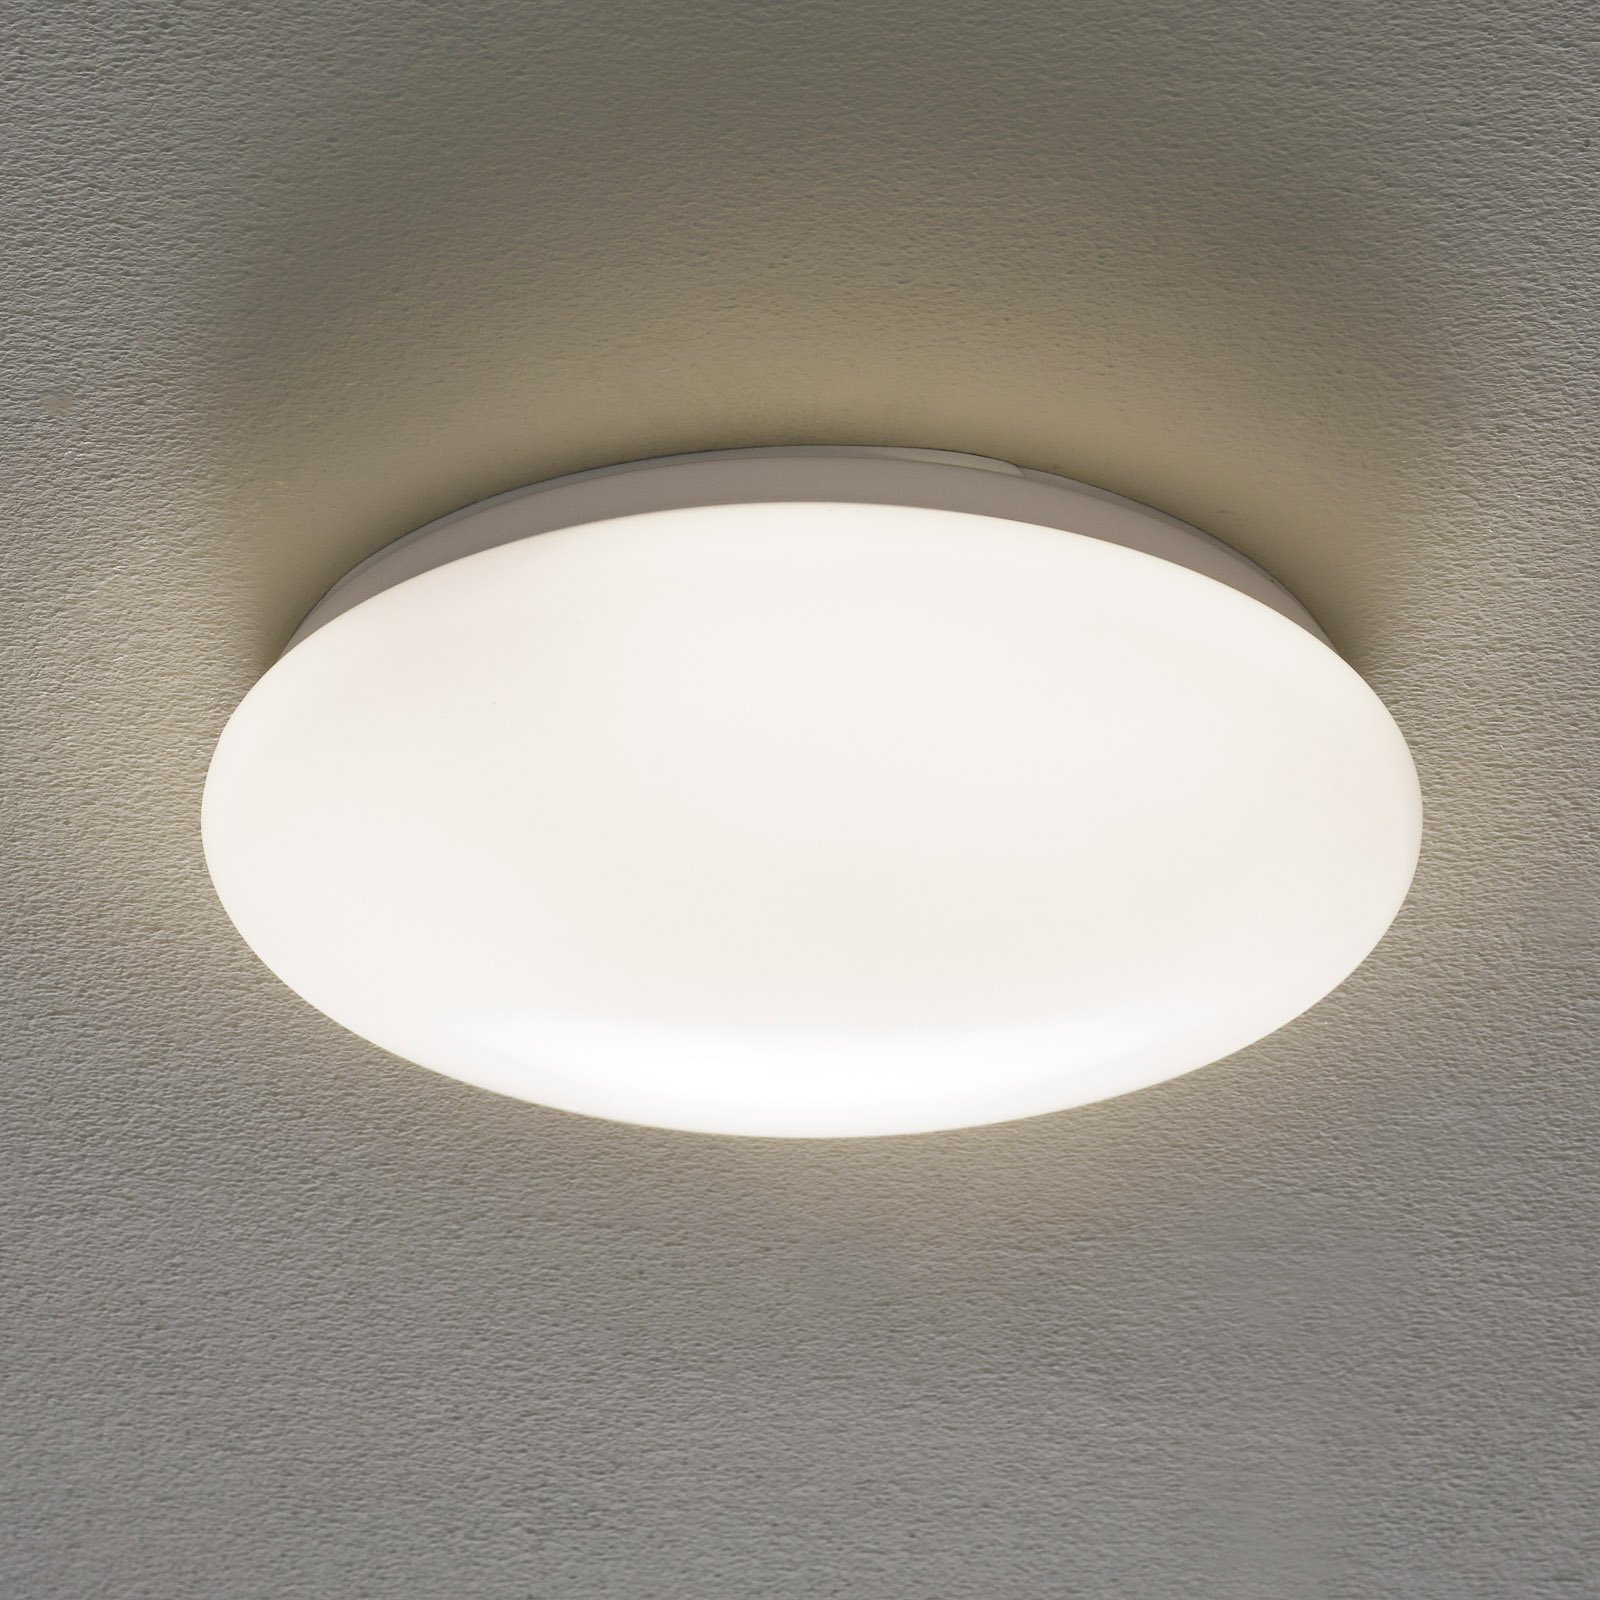 LED stropní světlo Altona, Ø 27,6cm 950lm 4 000 K